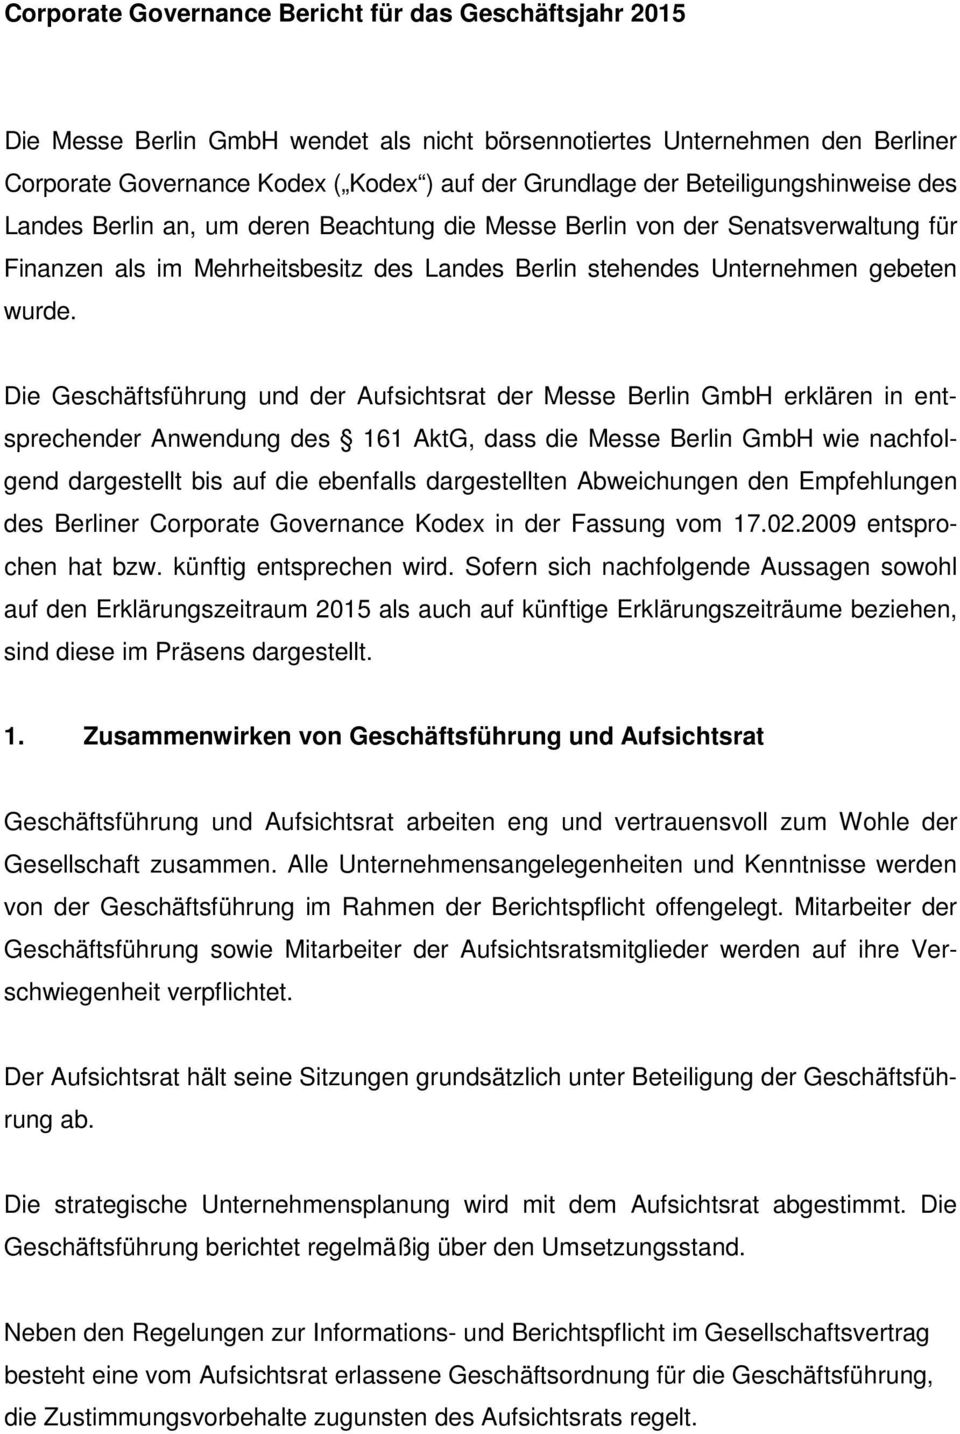 Die Geschäftsführung und der Aufsichtsrat der Messe Berlin GmbH erklären in entsprechender Anwendung des 161 AktG, dass die Messe Berlin GmbH wie nachfolgend dargestellt bis auf die ebenfalls